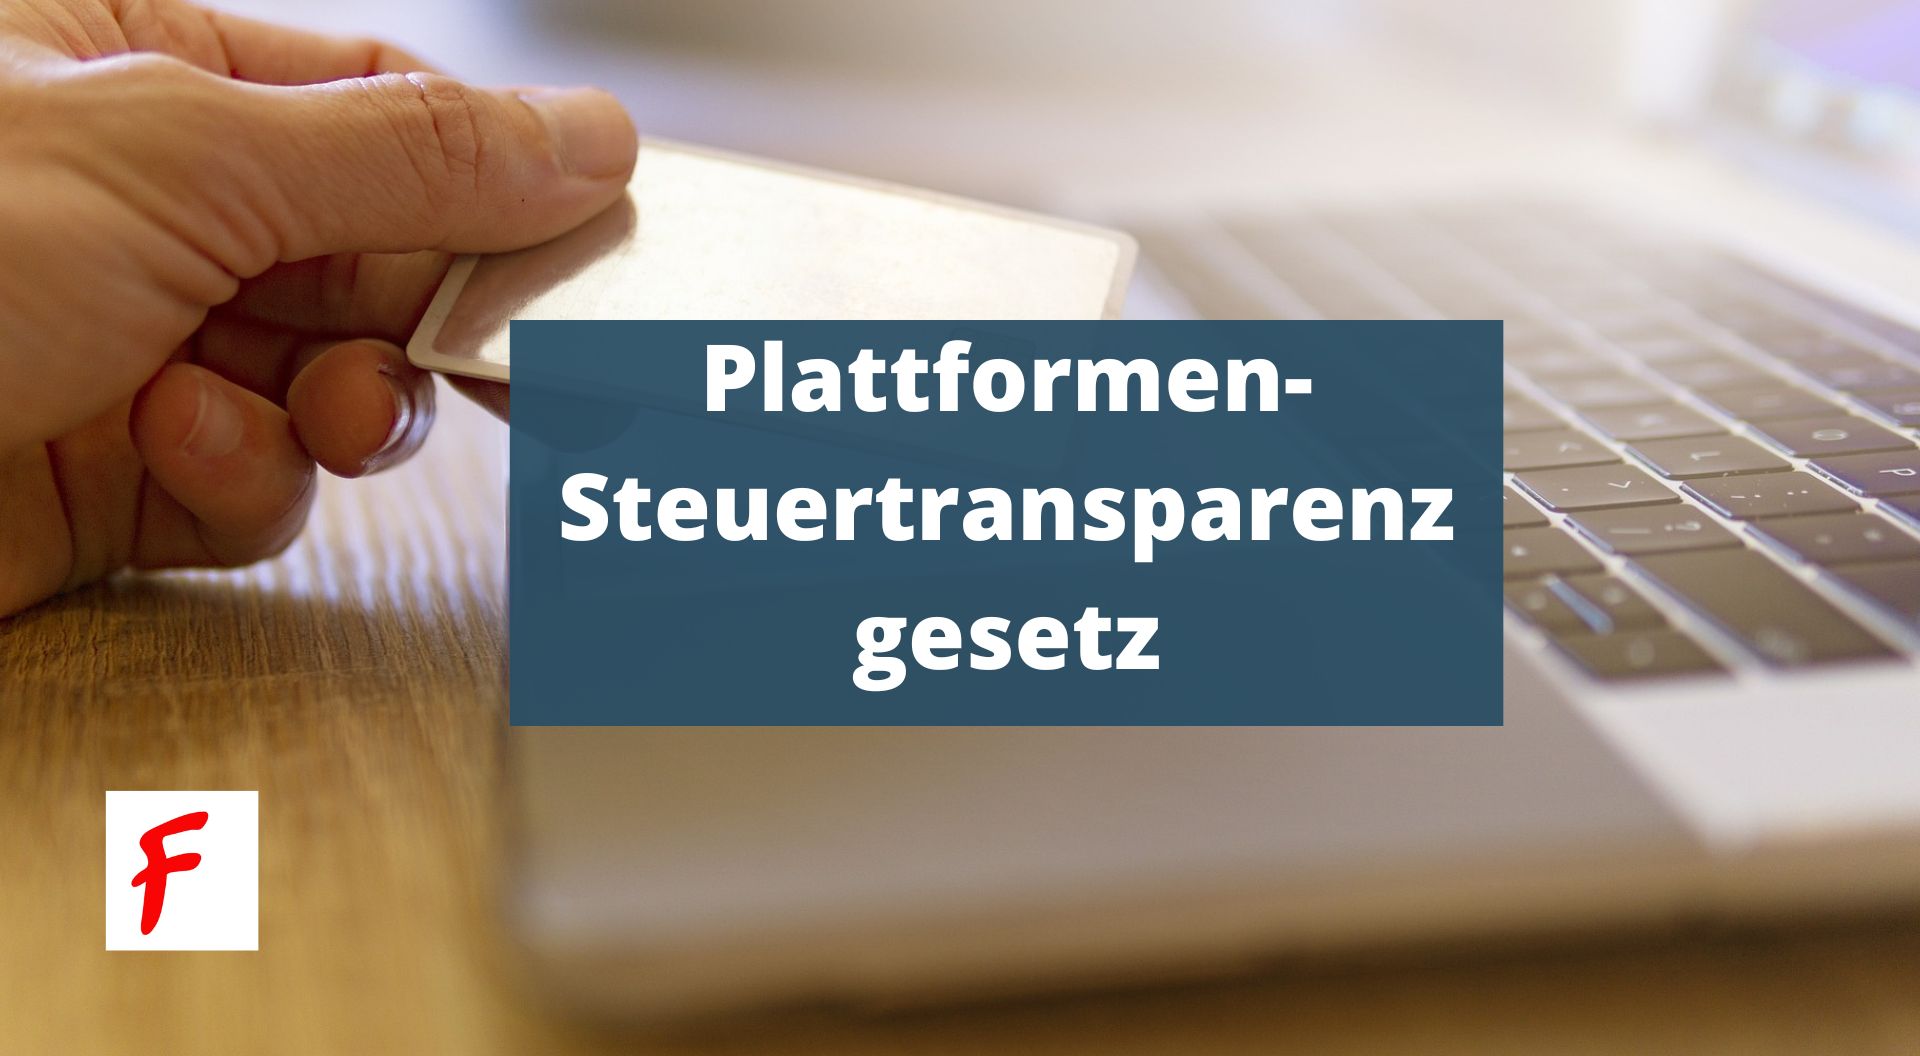 Онлайн-платформы обязаны передавать данные о продажах в налоговую инспекцию Германии